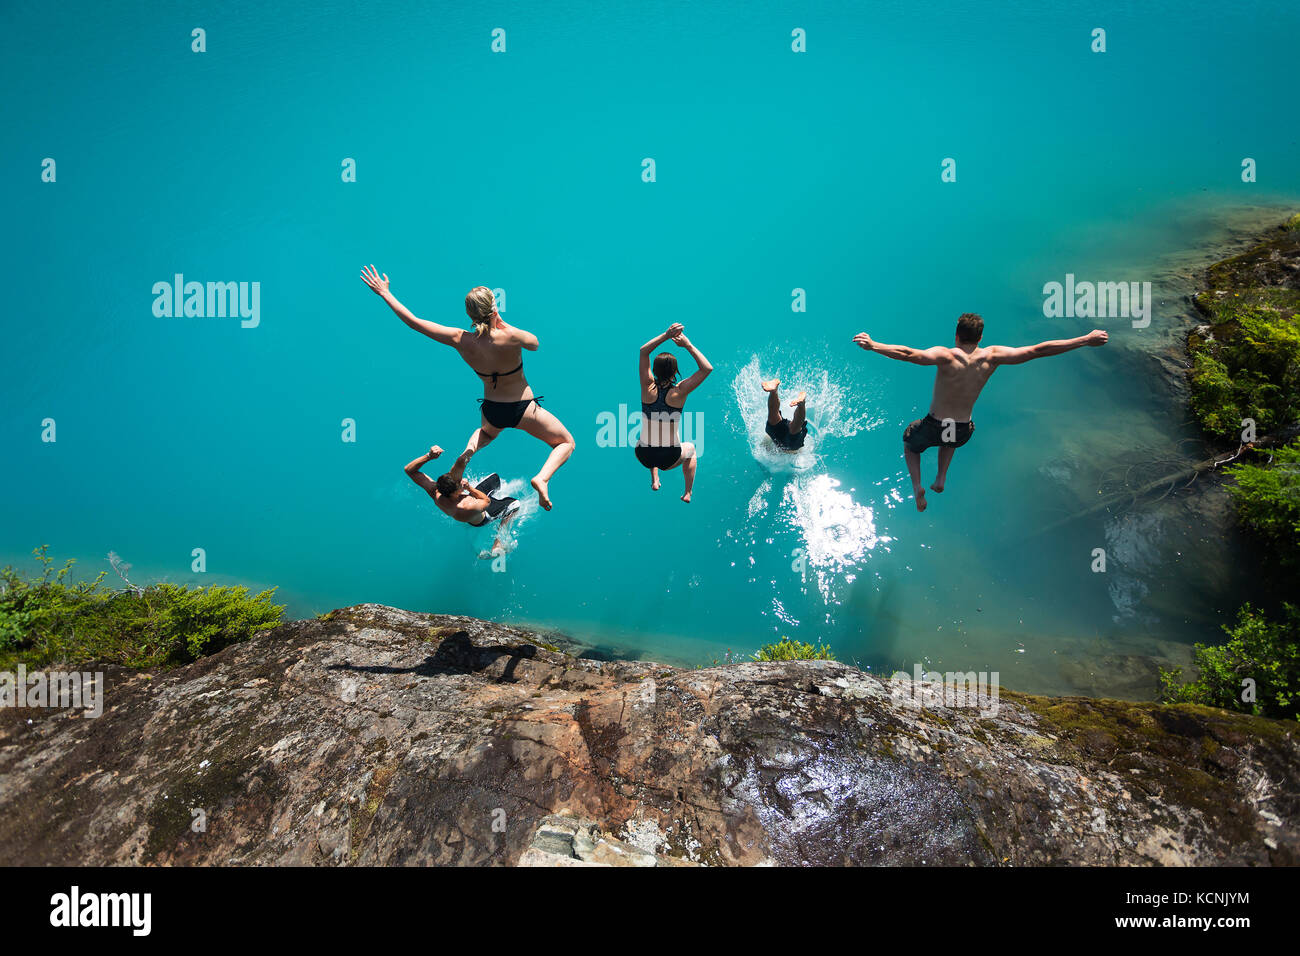 Cinq amis plongez dans les eaux turquoise de siècle sam Lake dans le parc Strathcona, l'île de Vancouver, Colombie-Britannique, Canada Banque D'Images